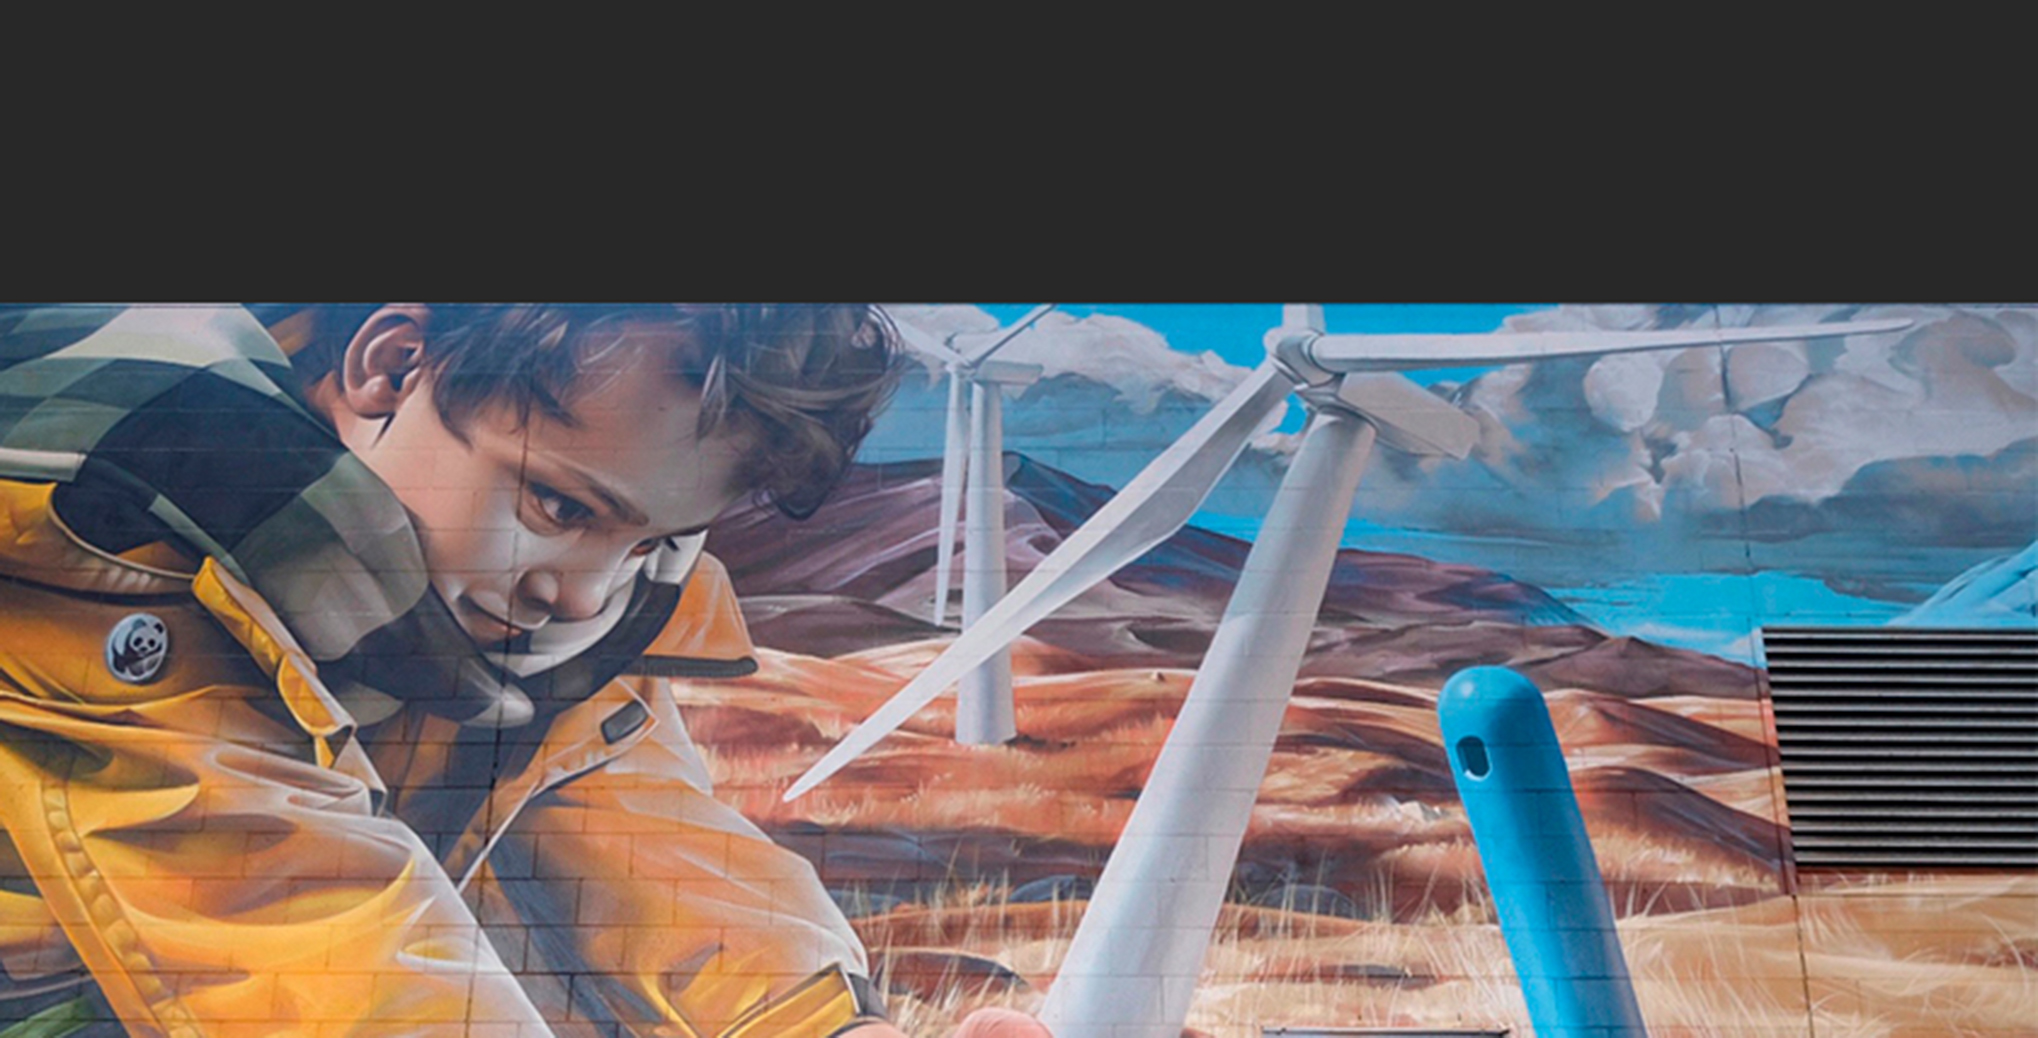 ScottishPower lega el mural “Generation Green” a la ruta de arte urbano de Glasgow